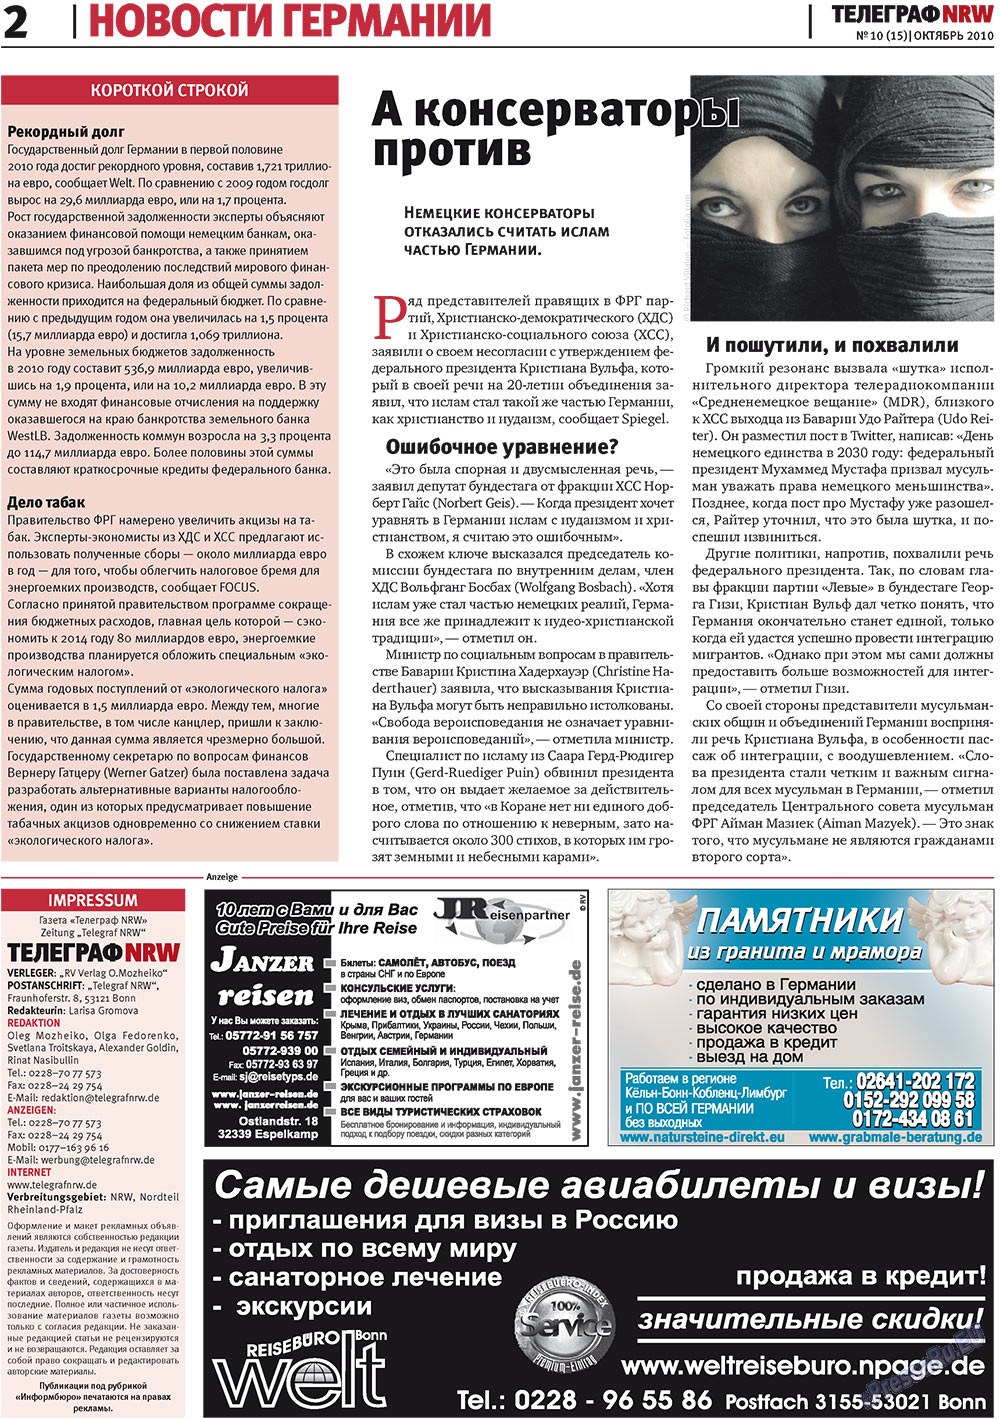 Телеграф NRW (газета). 2010 год, номер 10, стр. 2